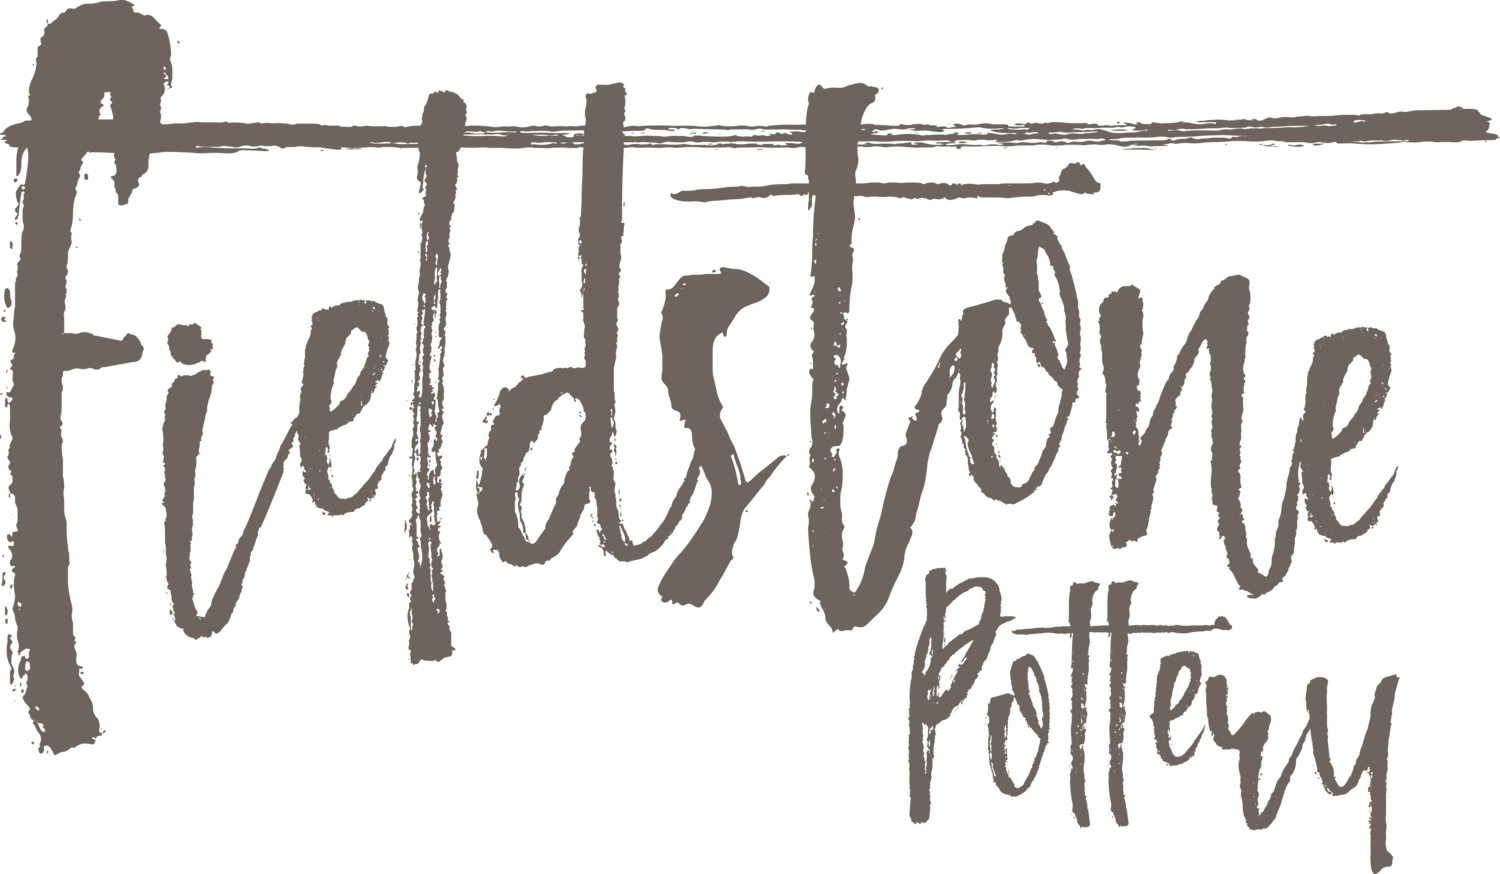 Fieldstone Pottery